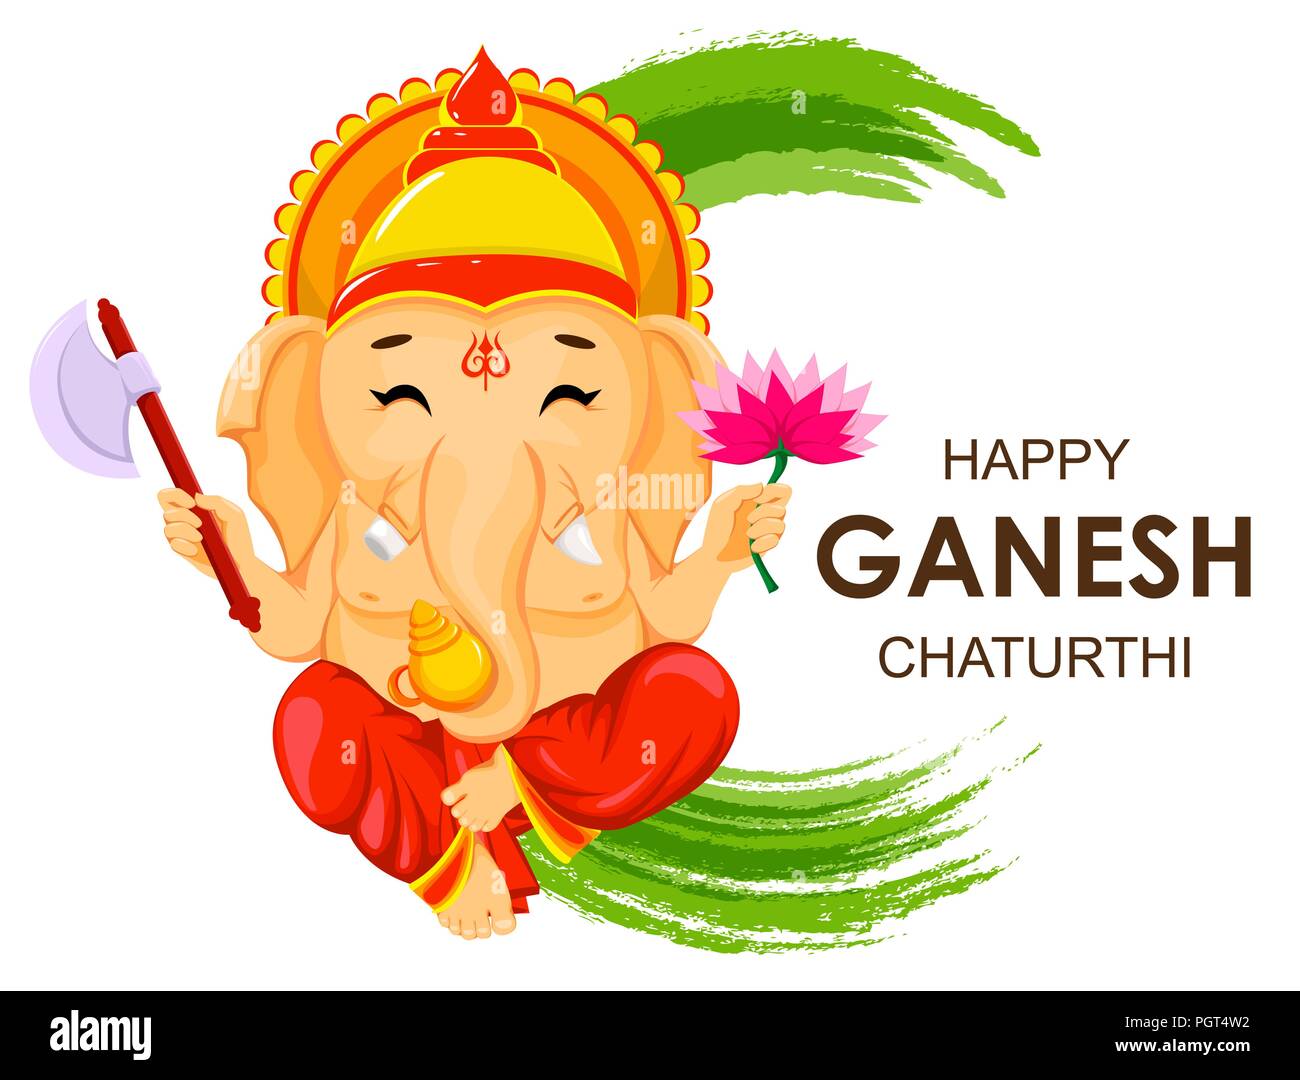 Feliz Ganesh Chaturthi tarjeta de felicitación para el festival tradicional de la India. Sentado el Señor Ganesha con flor y ax, estilo de dibujos animados. Ilustración vectorial. Ilustración del Vector